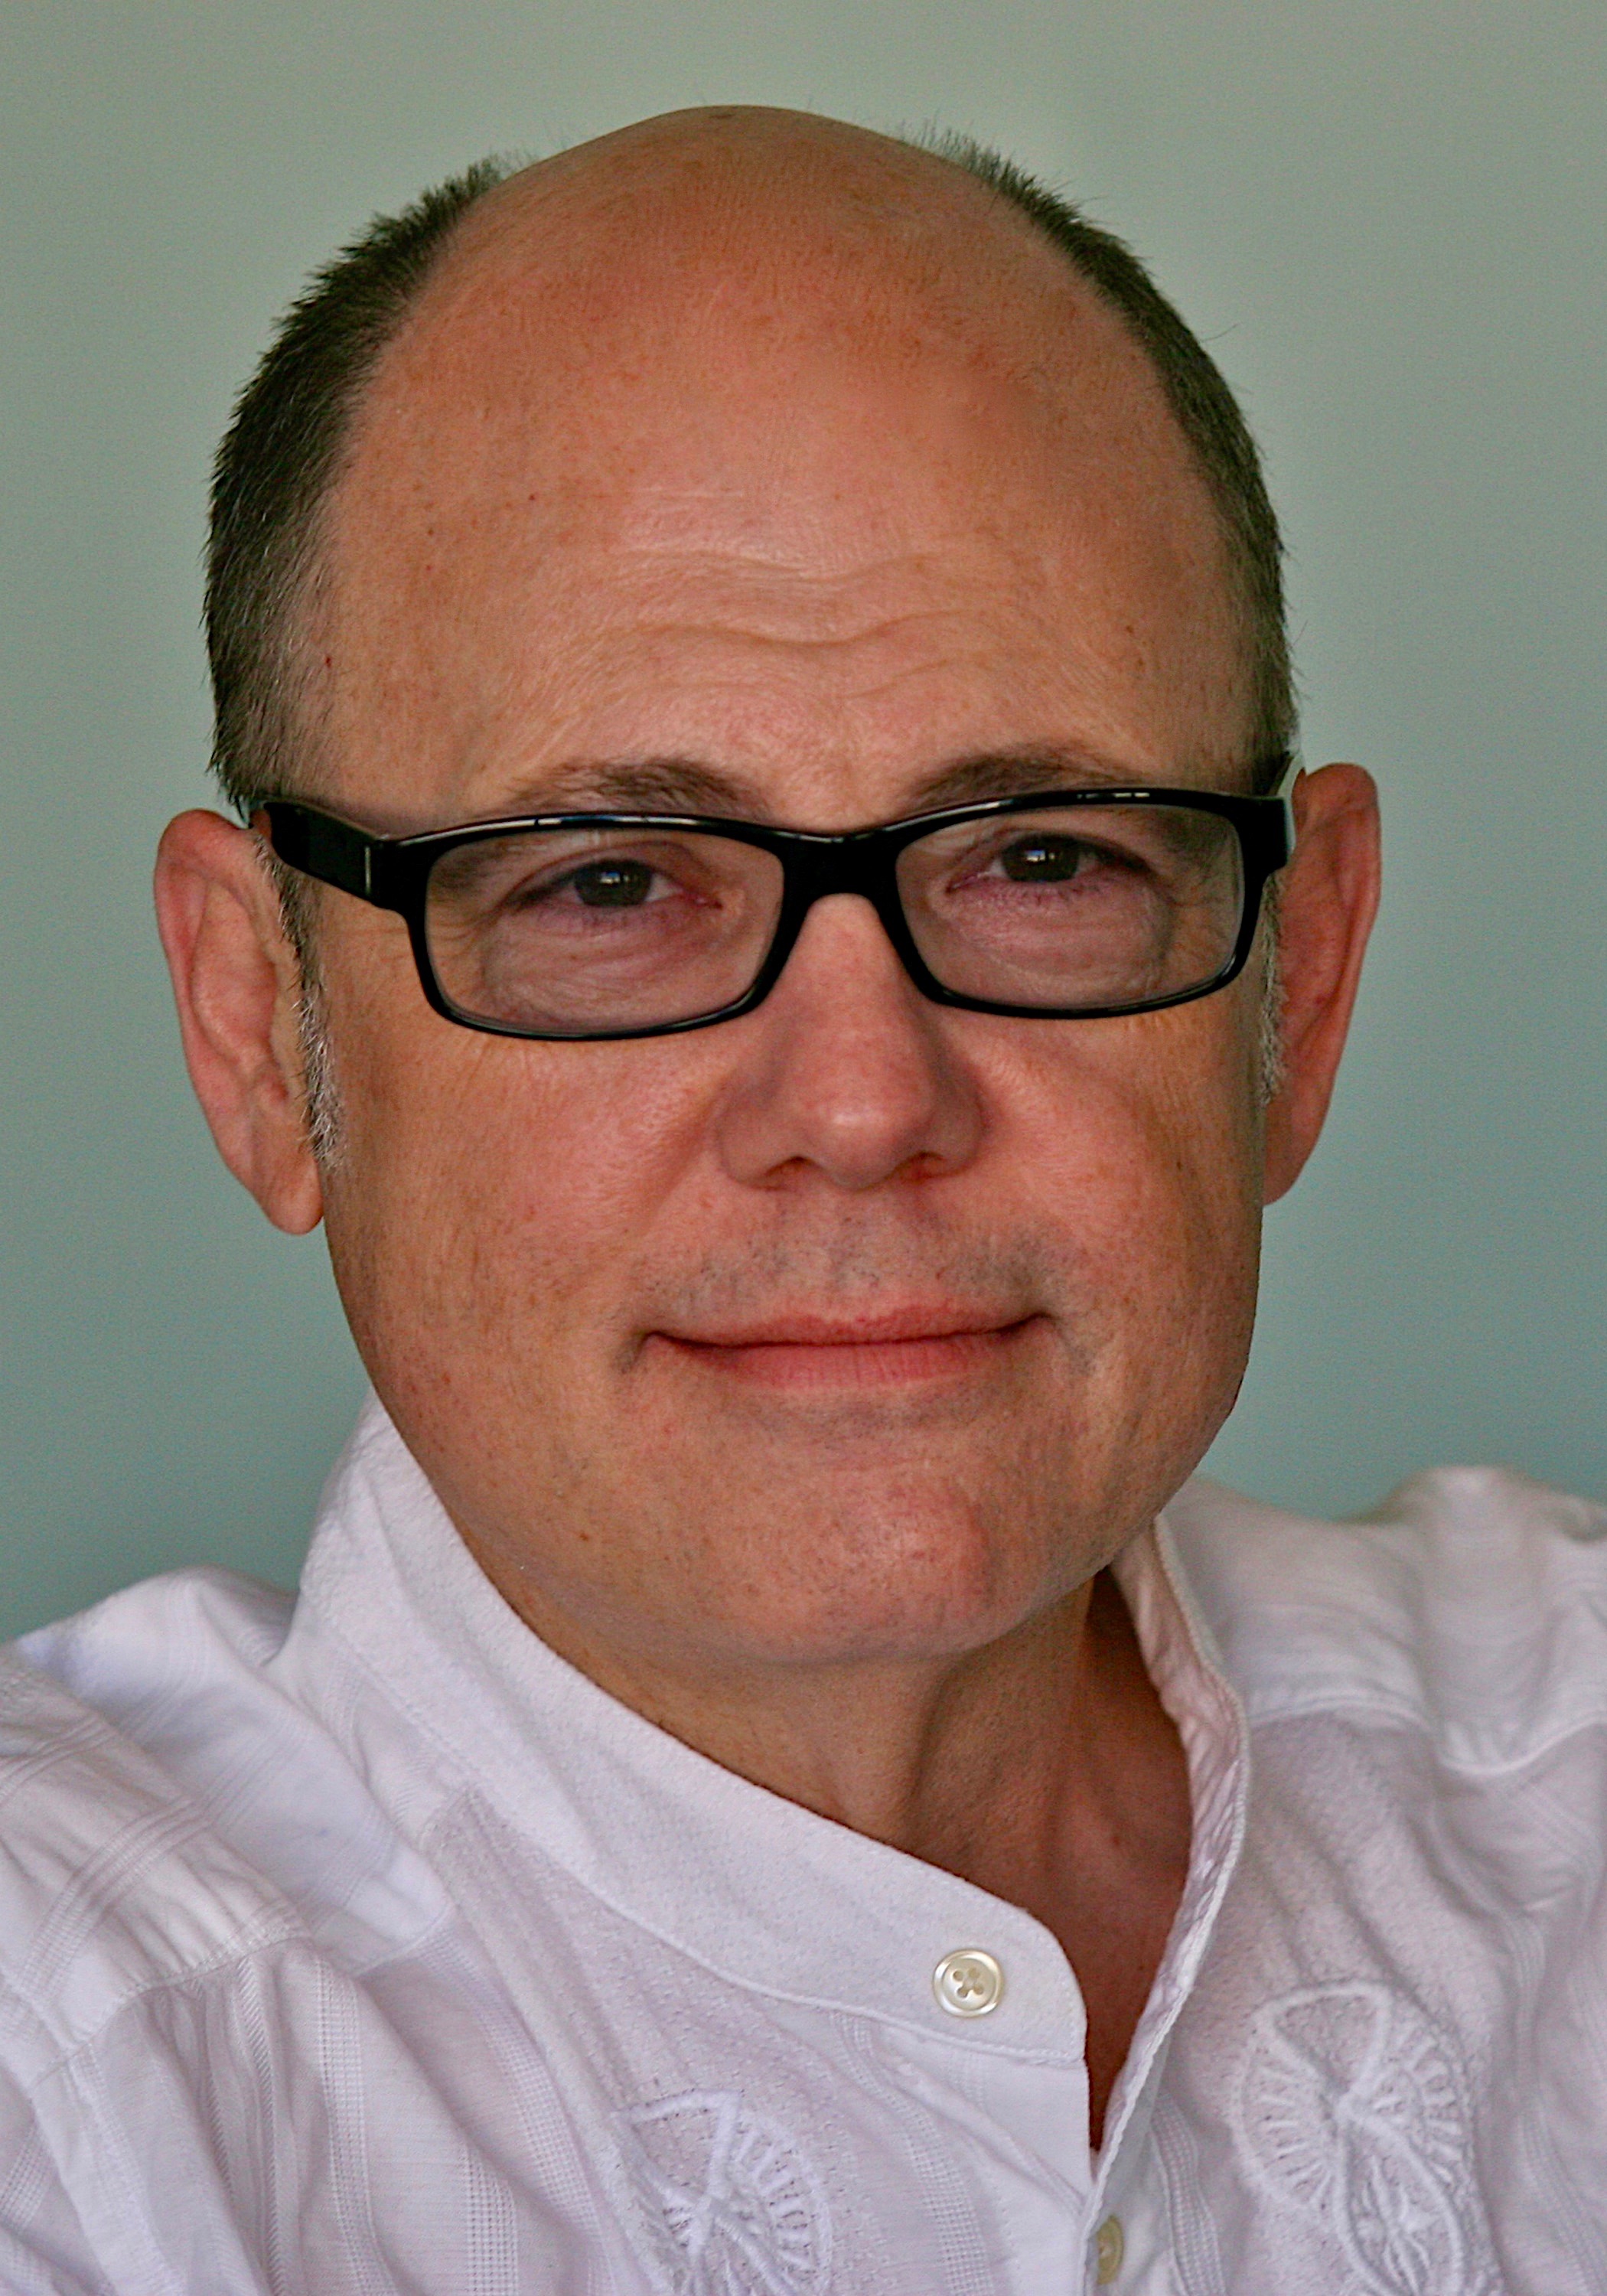 Tim Gibbons - TV Career Coach & Script Consultant